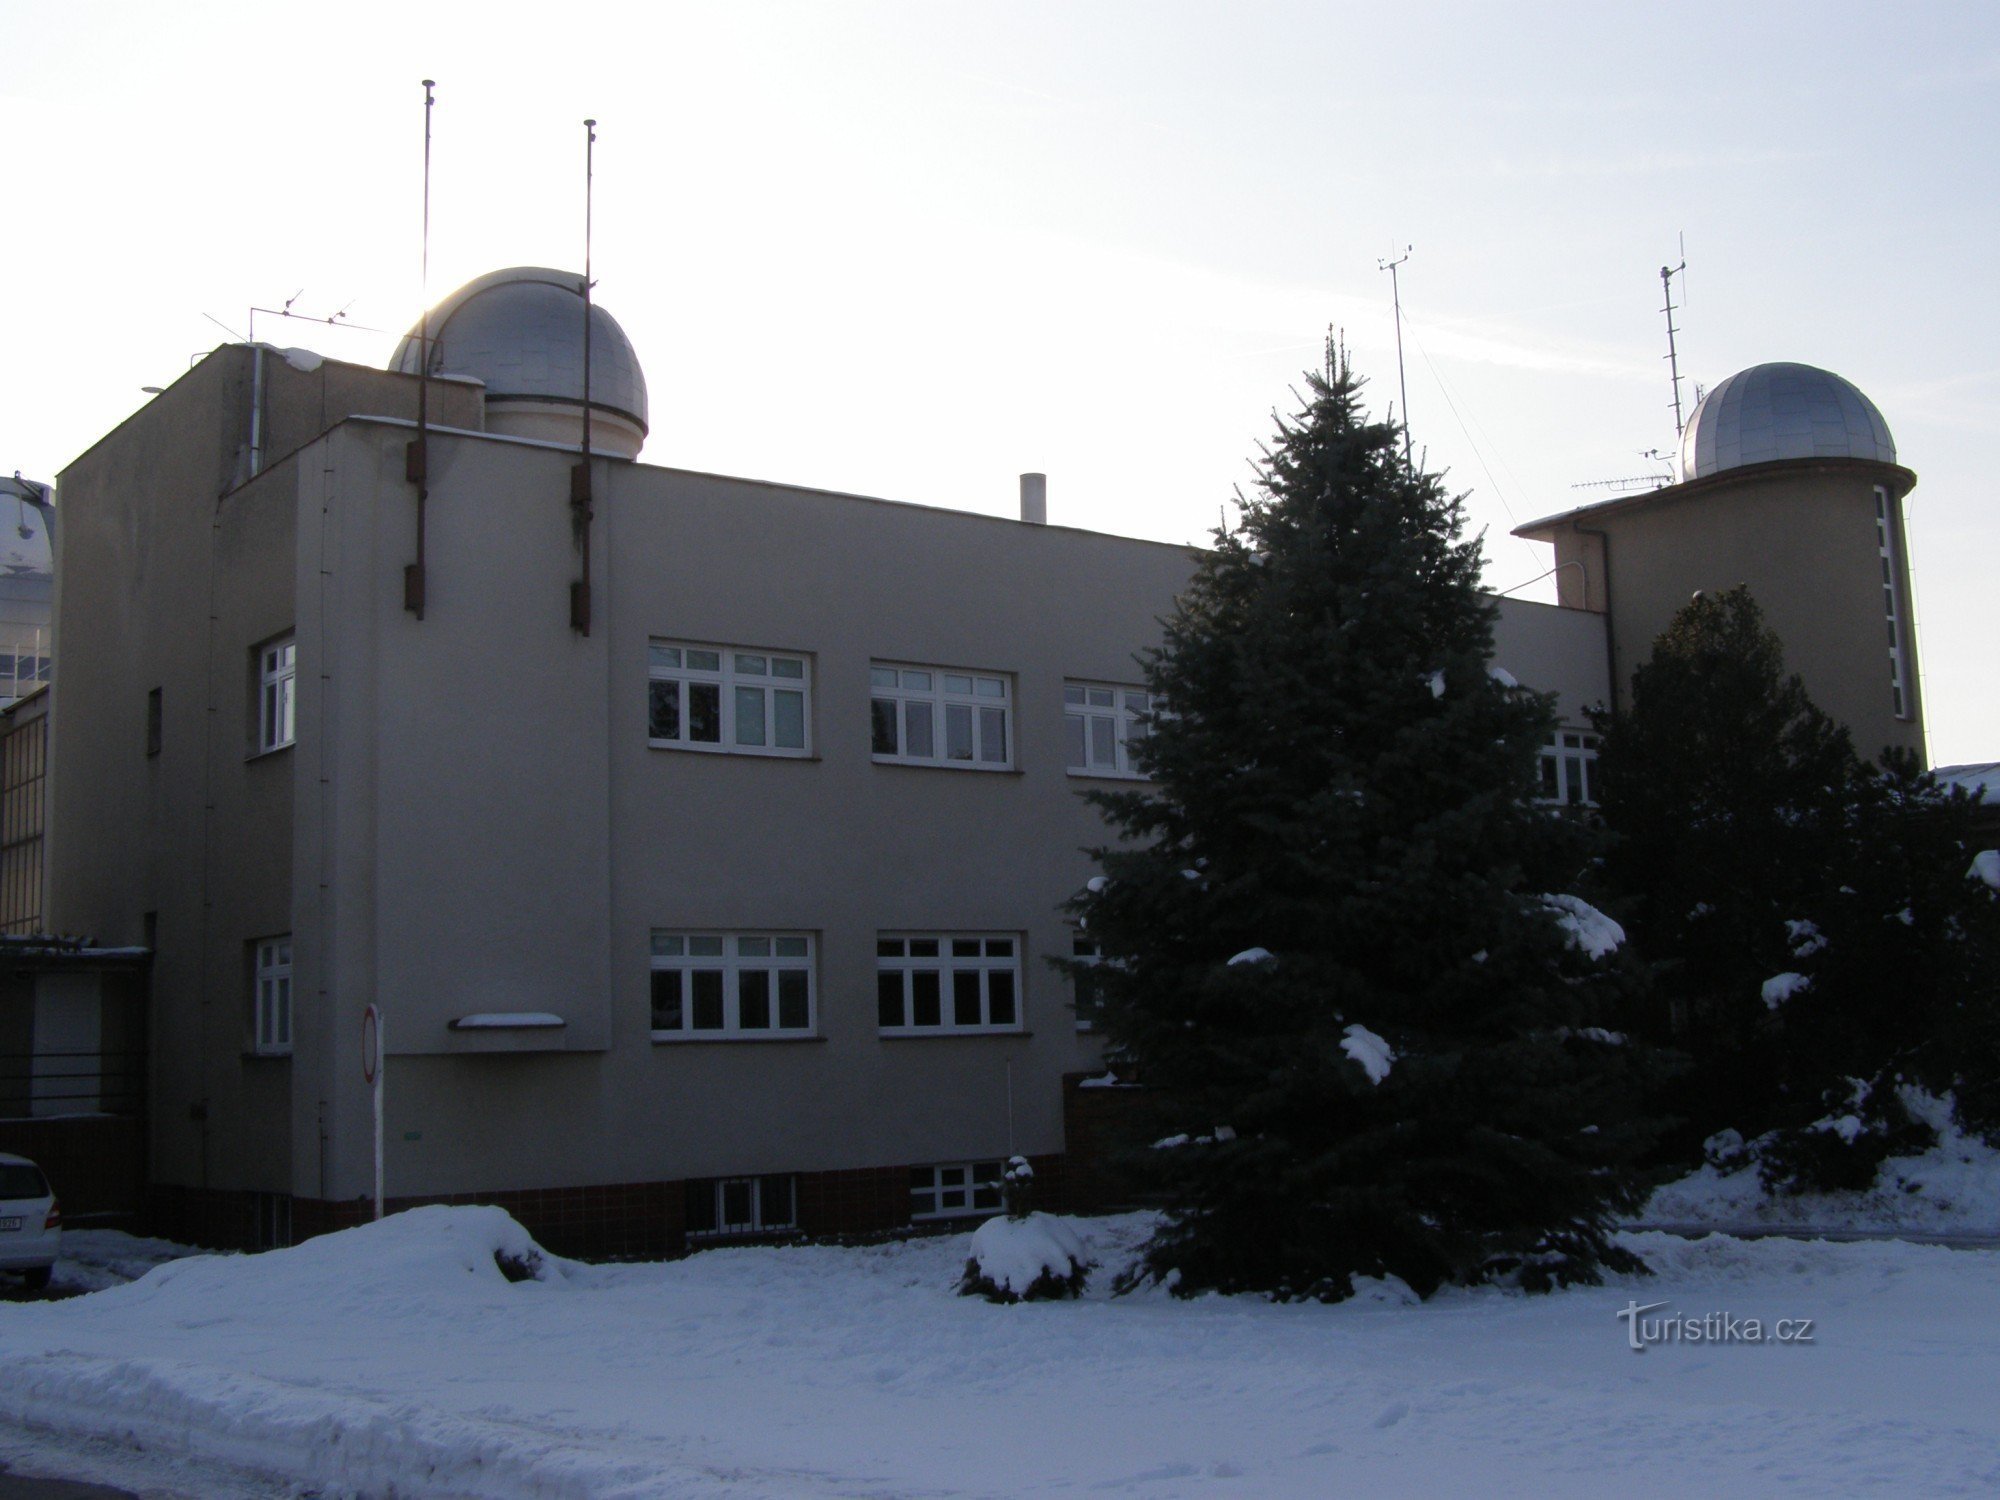 Hradec Králové - 天文台和天文馆